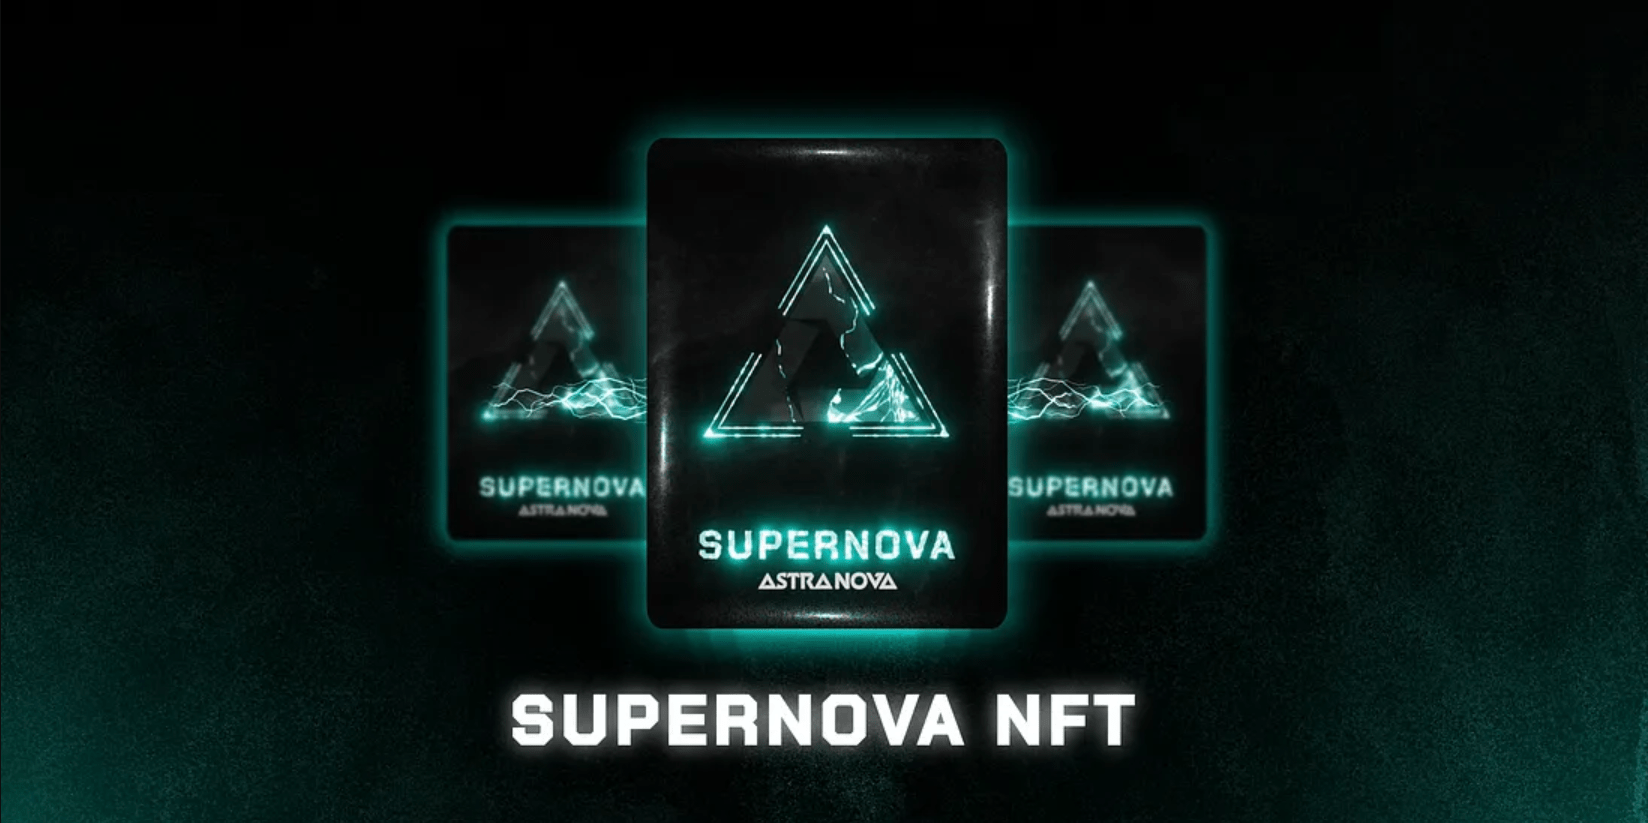 SuperNova NFT: The Ultimate Genesis Pass for Astra Nova